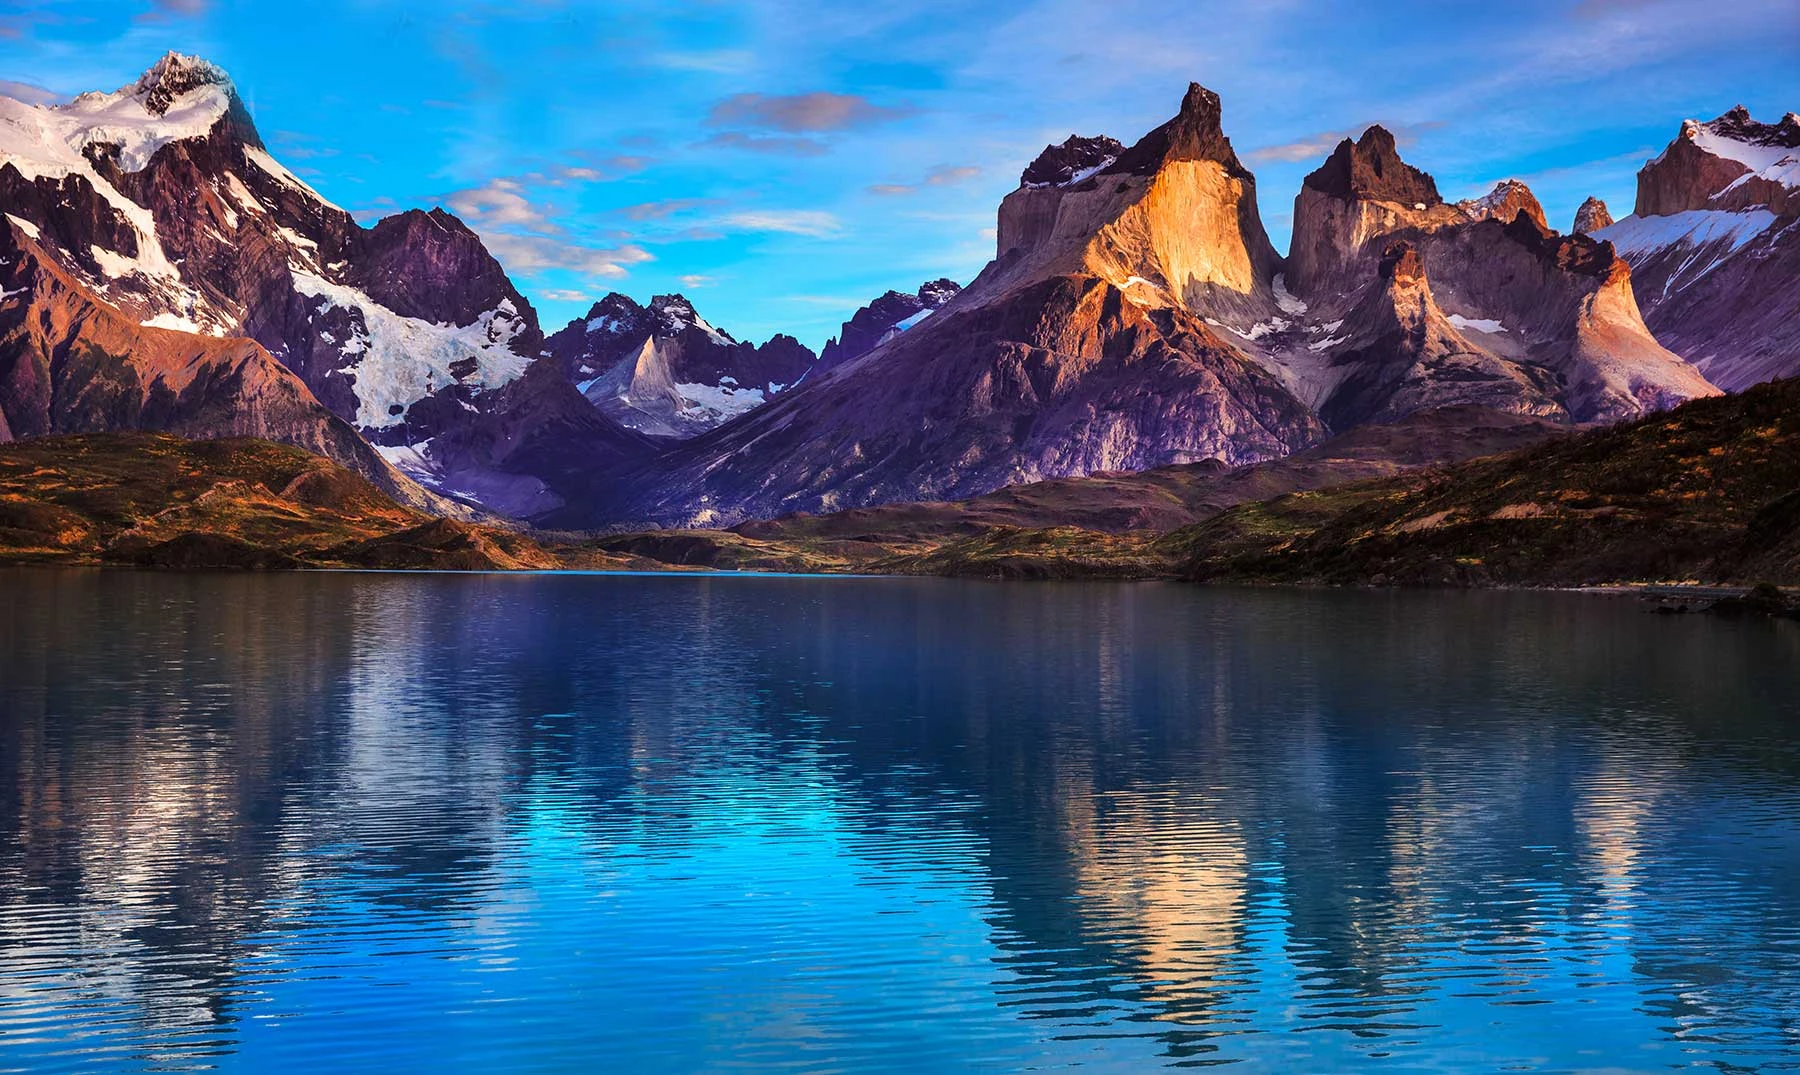 La espectacular belleza natural de la Patagonia